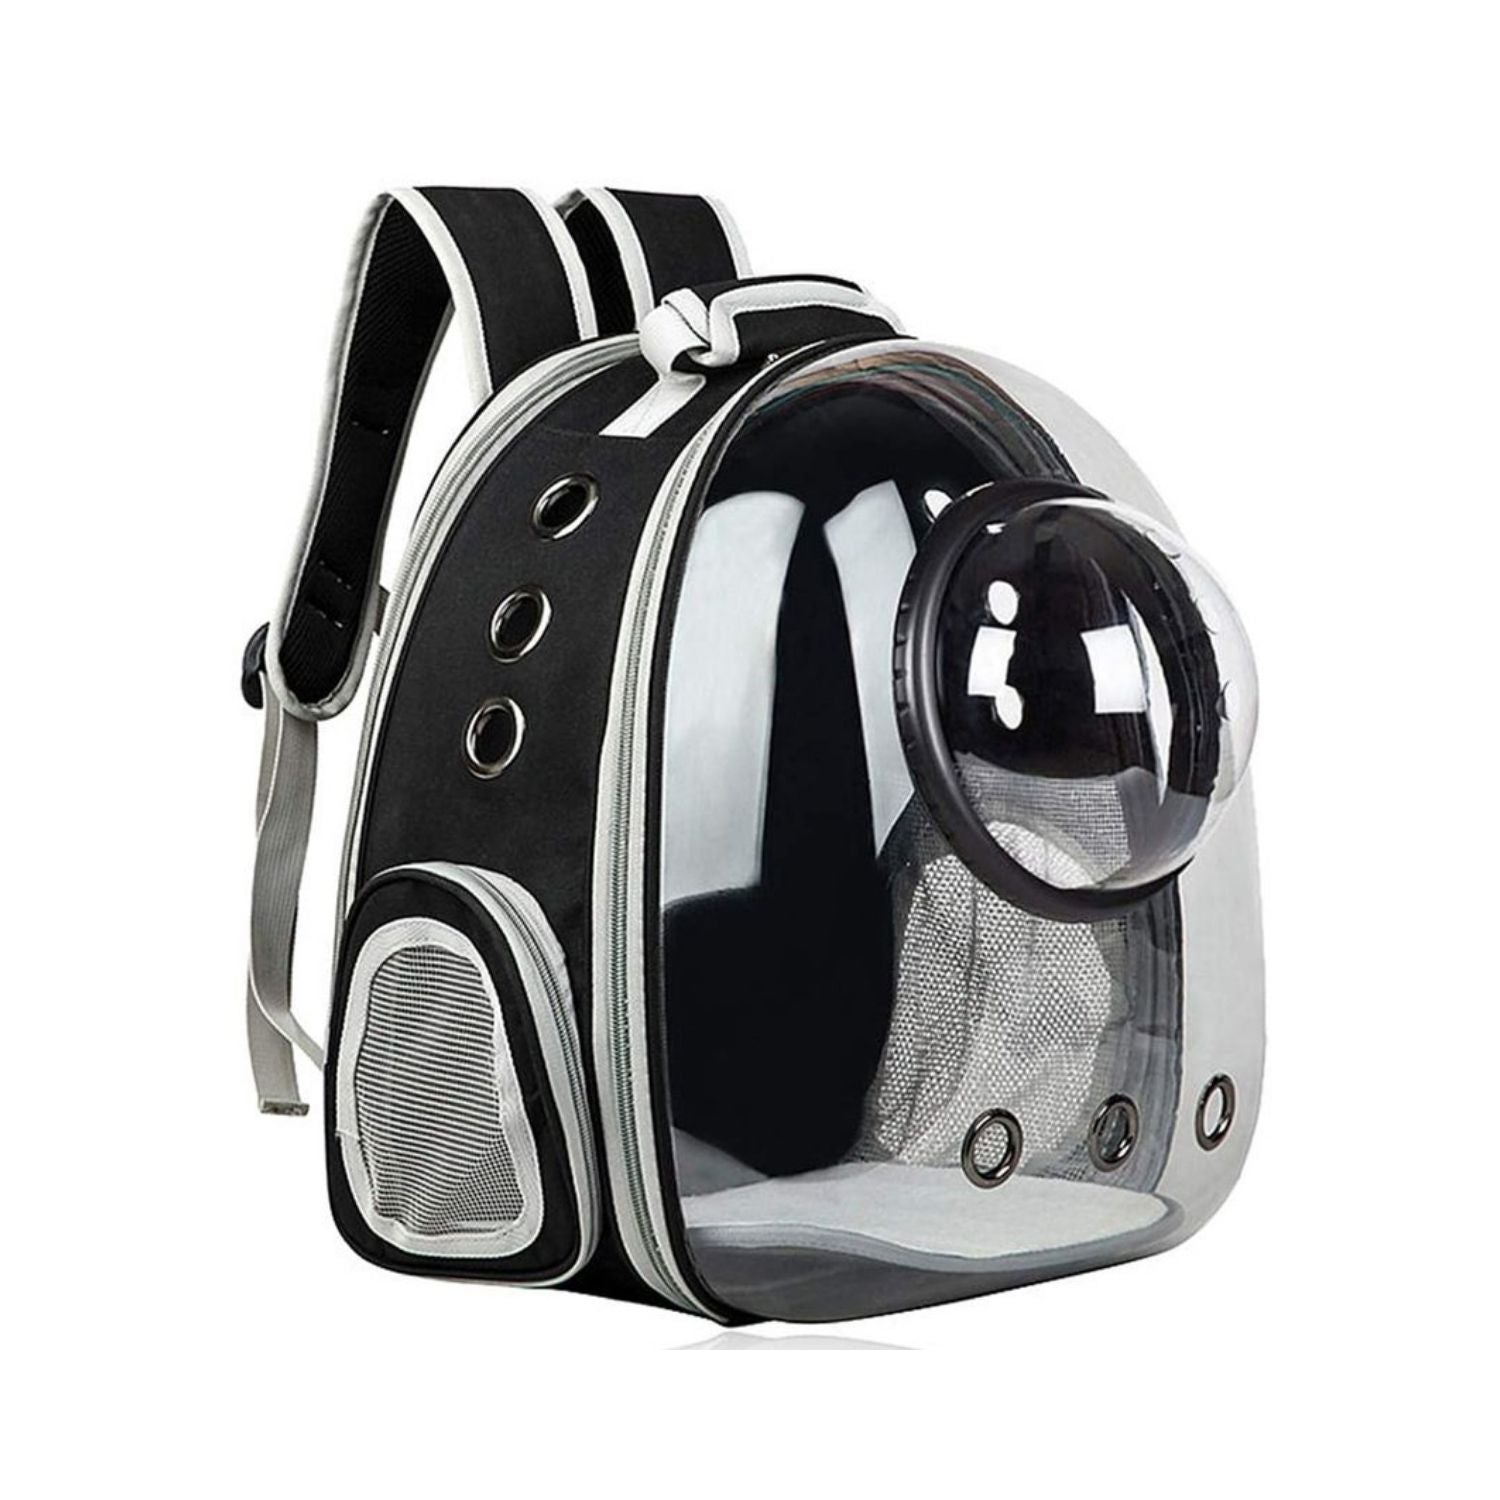 Floofi Space Capsule Backpack - Model 2 (Black)